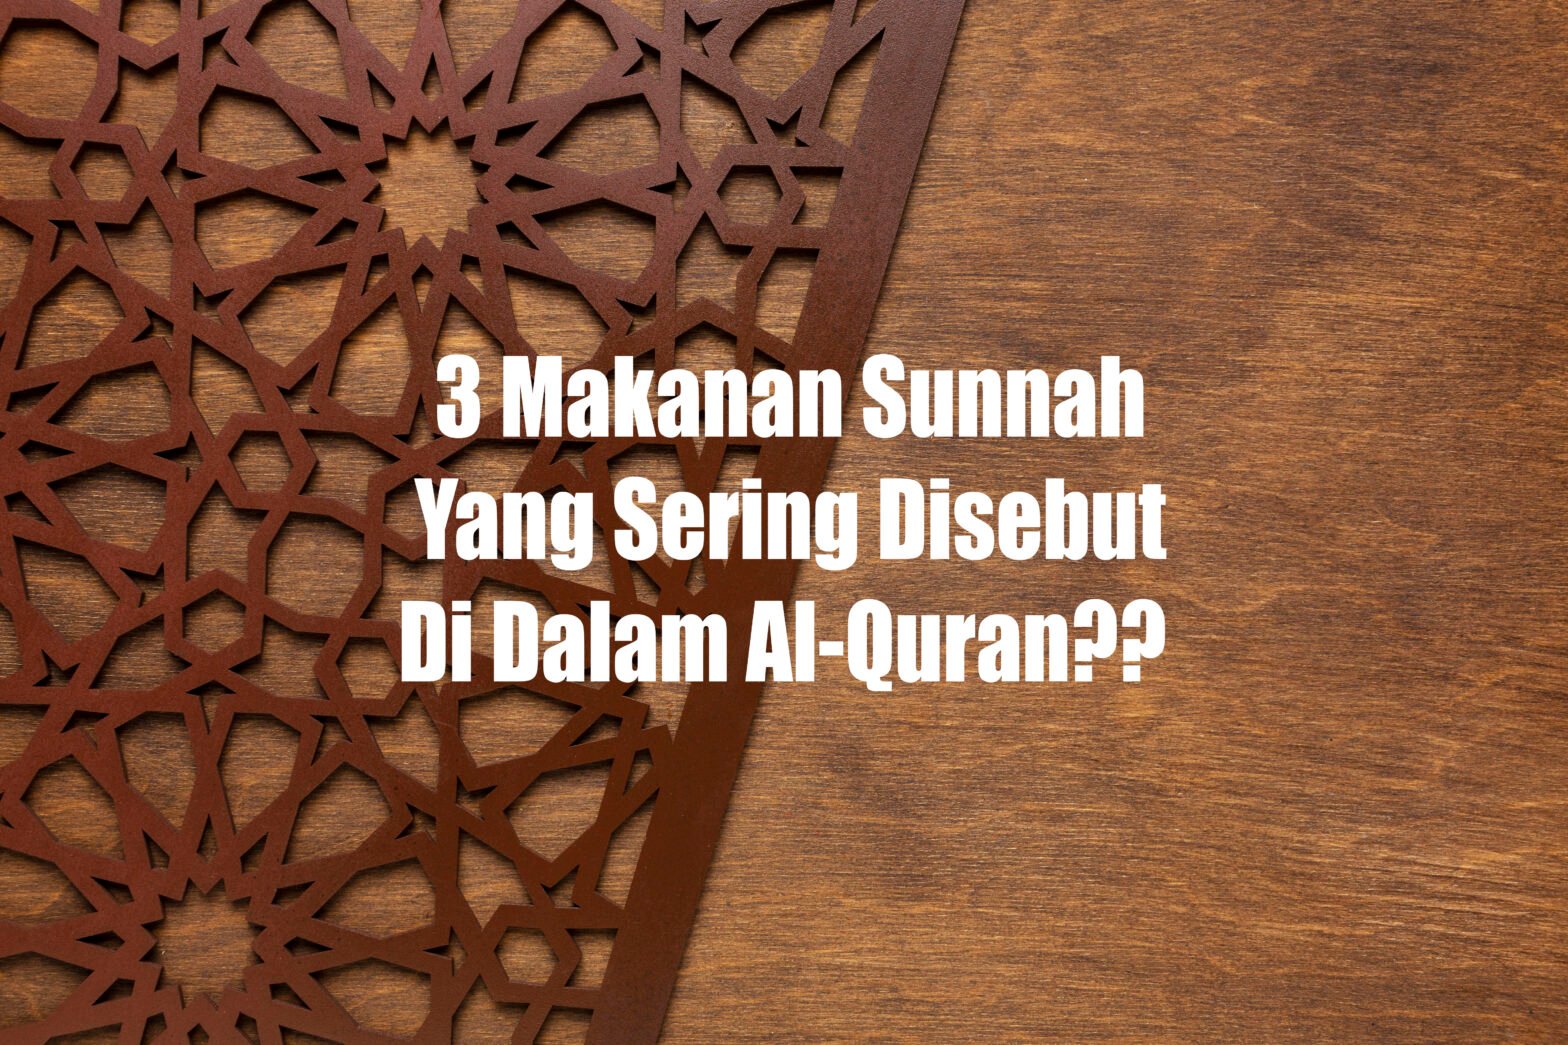 3 Makanan Sunnah Yang Sering Disebut Di Dalam Al-Quran??